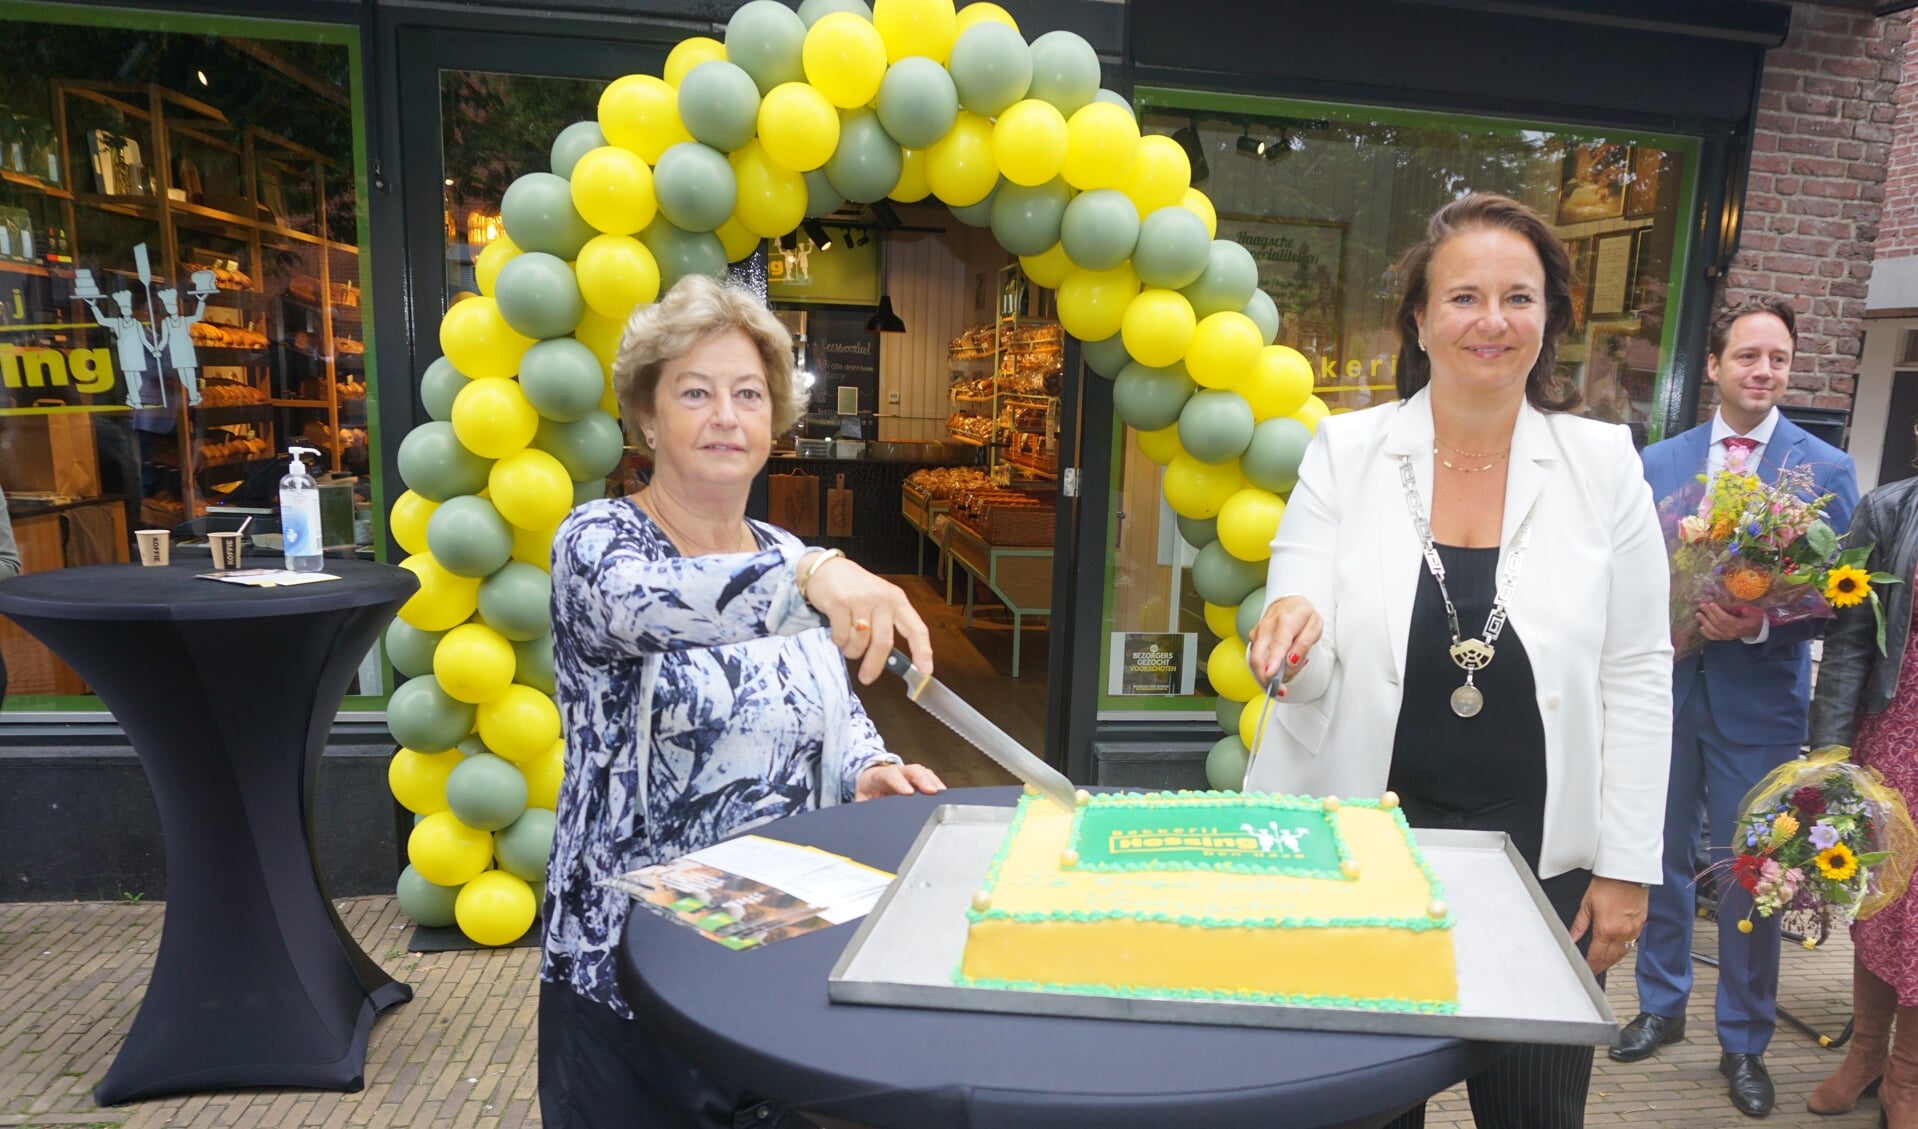 Mevrouw Christa Hessing en Burgemeester Stemerdink verrichten de openingshandeling door symbolisch de taart aan te snijden